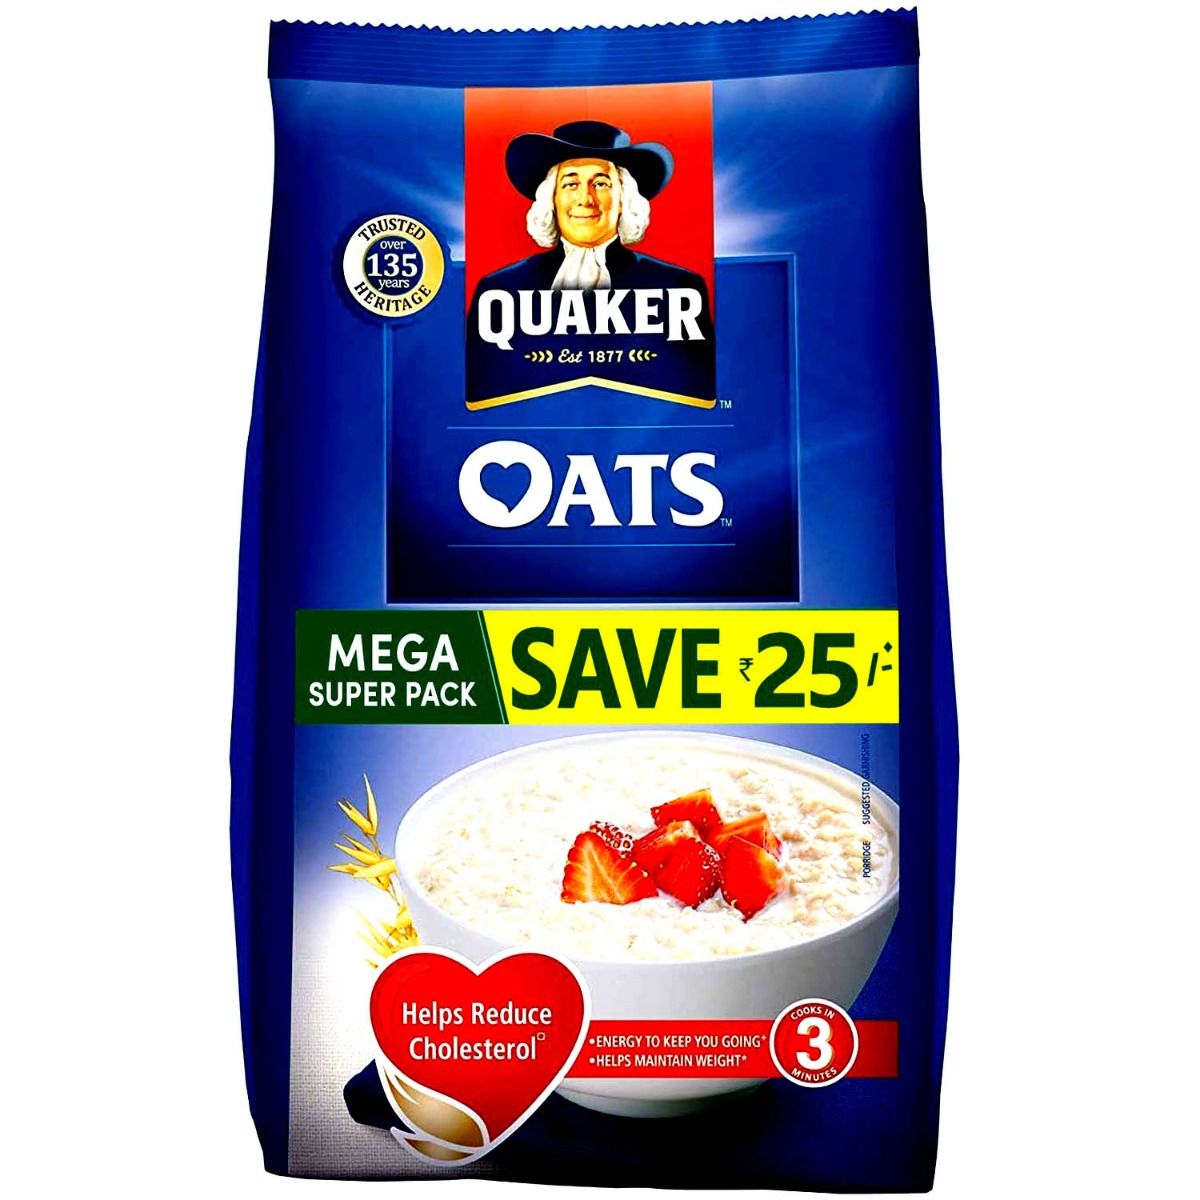 Quaker Oats, 1.6 kg, Pack of 1 